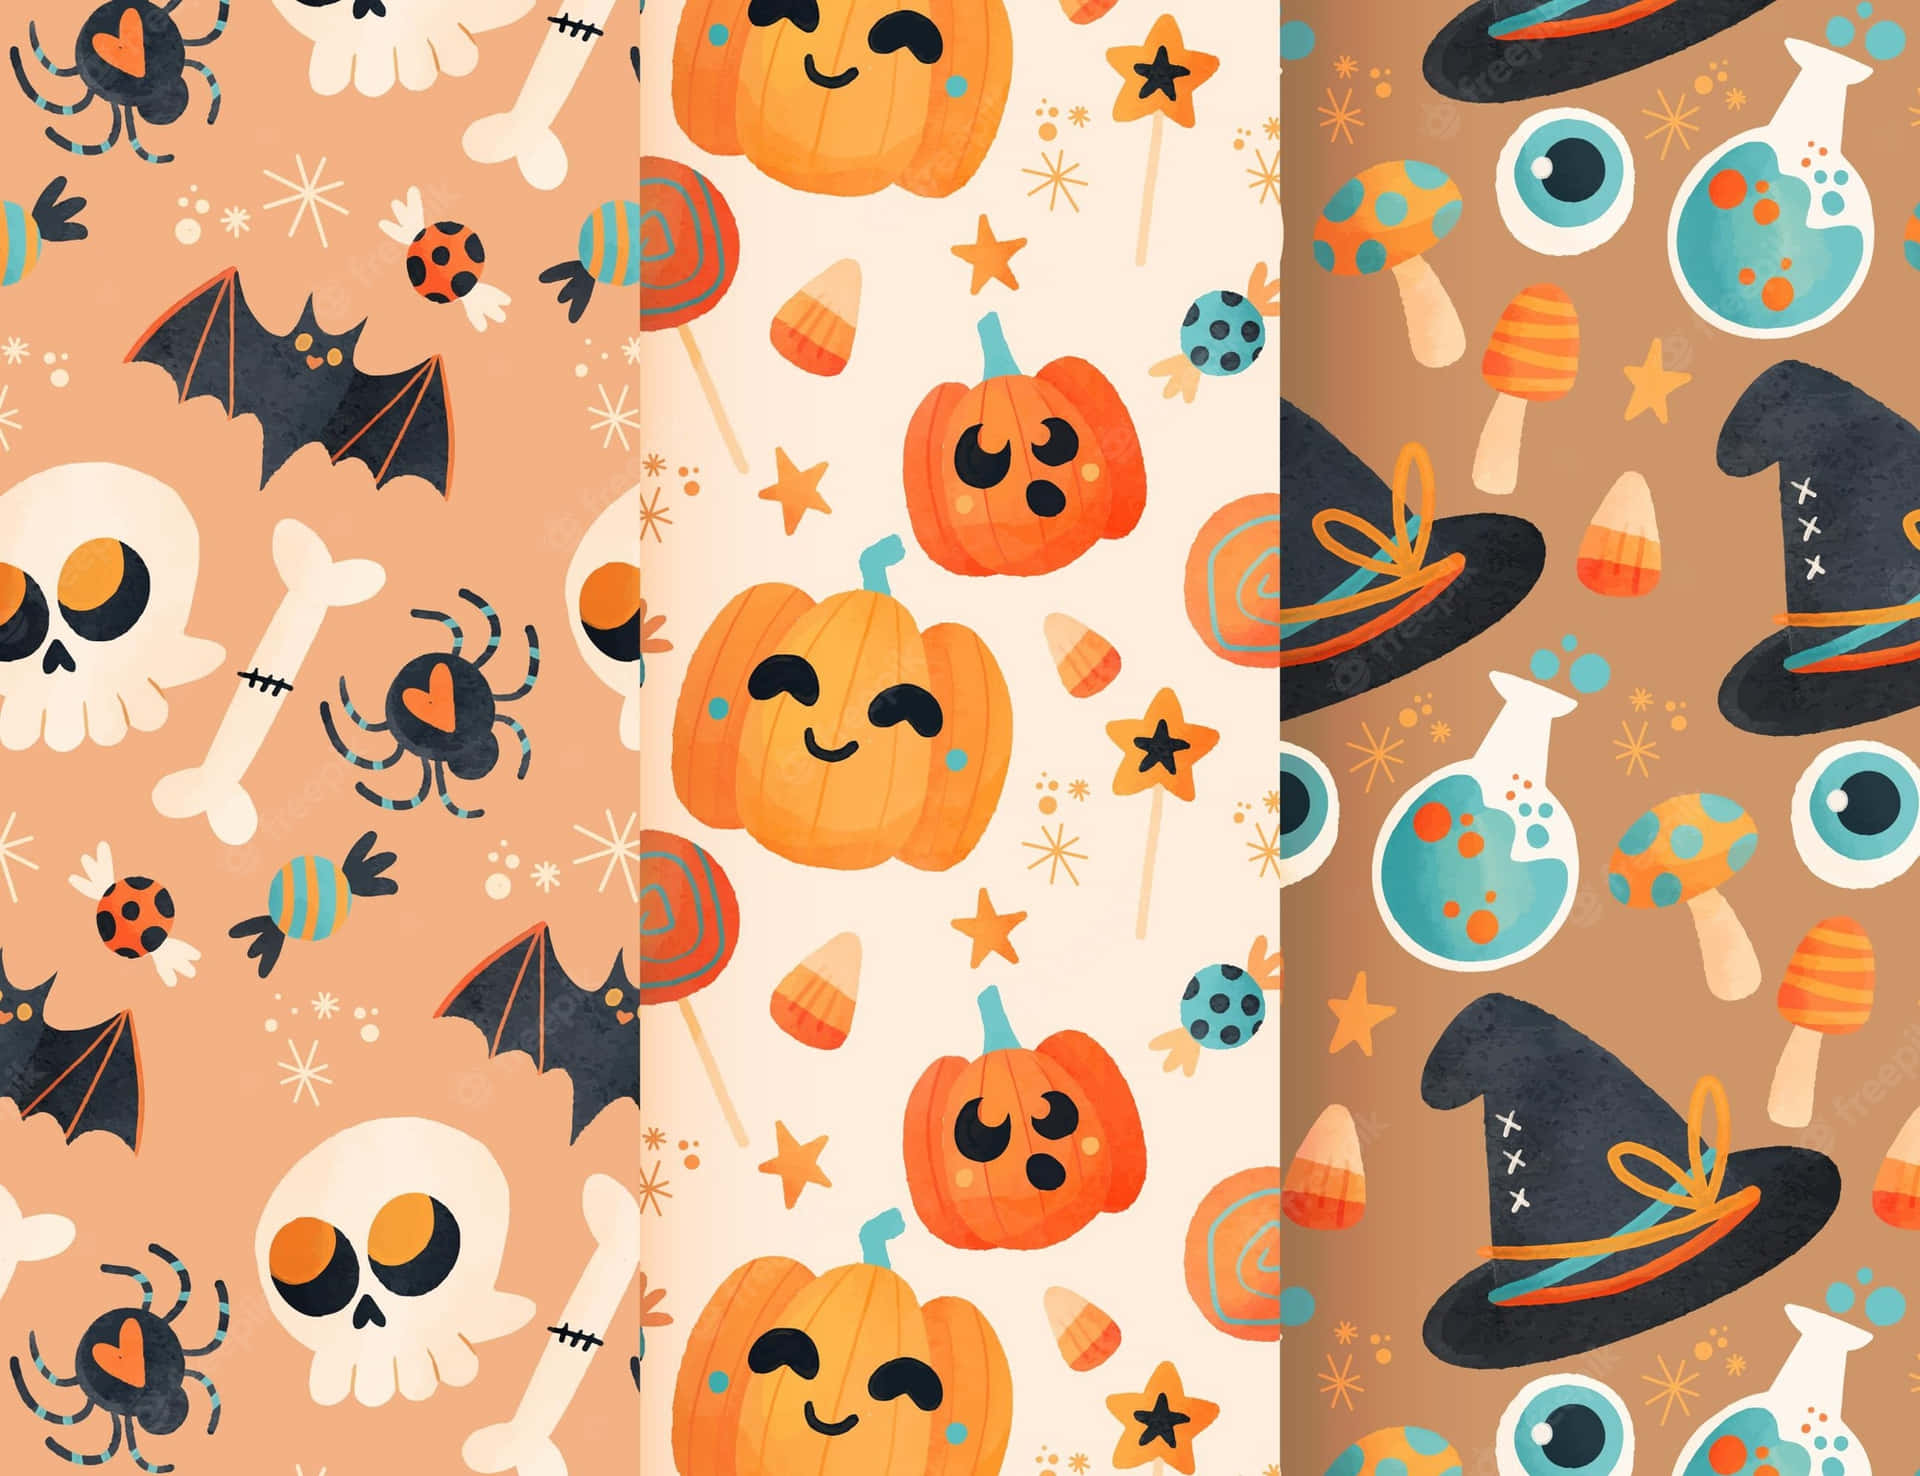 Patrónsin Costuras De Halloween Con Calabazas, Fantasmas Y Murciélagos Fondo de pantalla